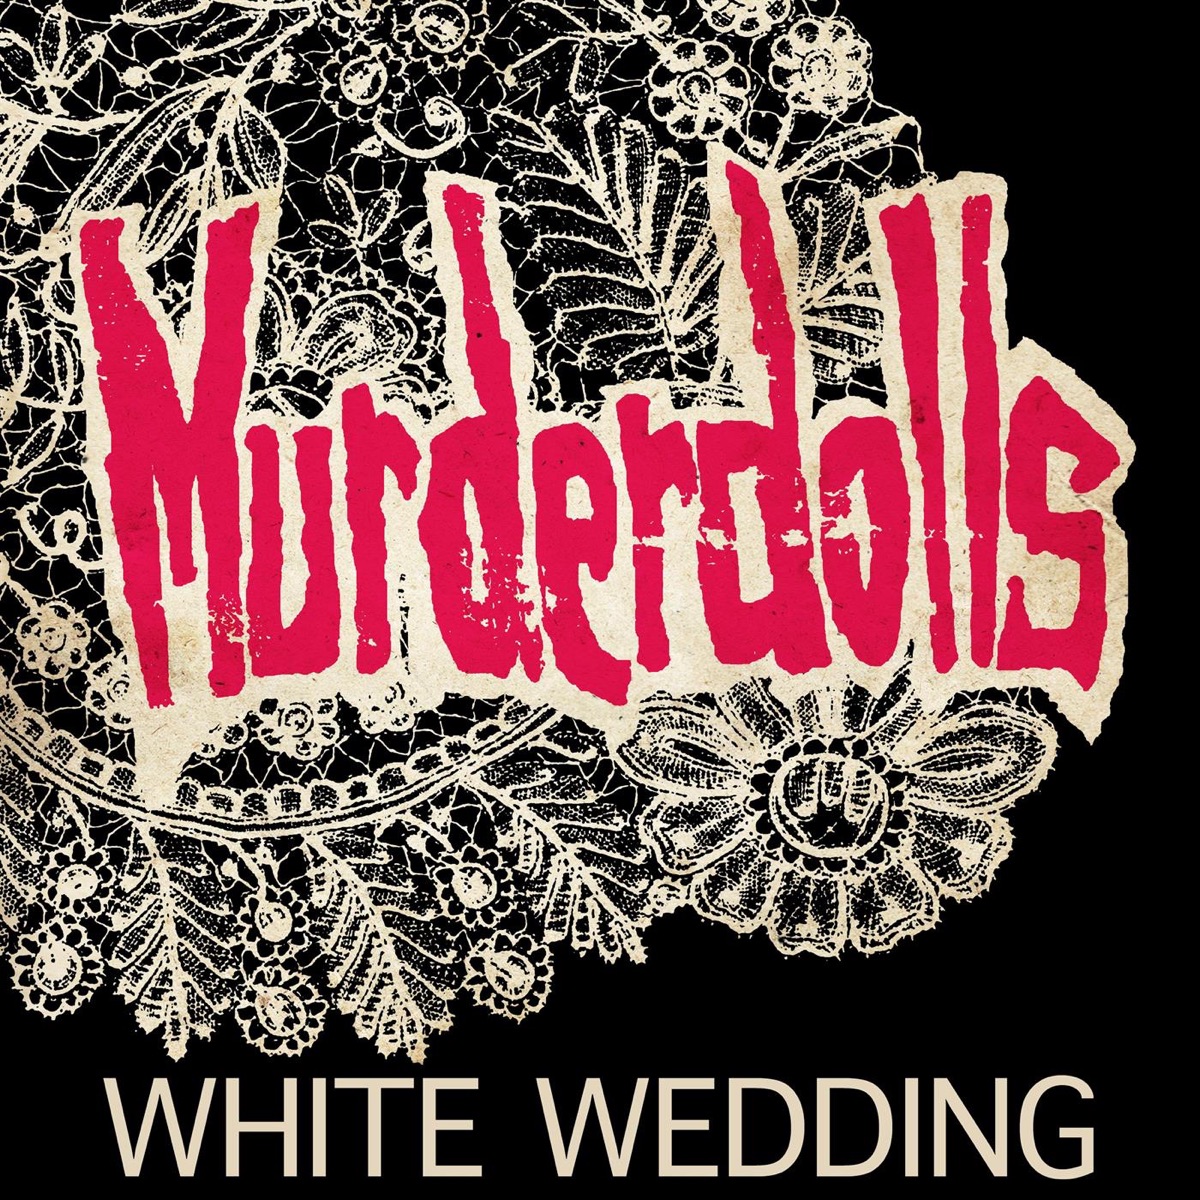 White Wedding by Murderdolls on Apple Music